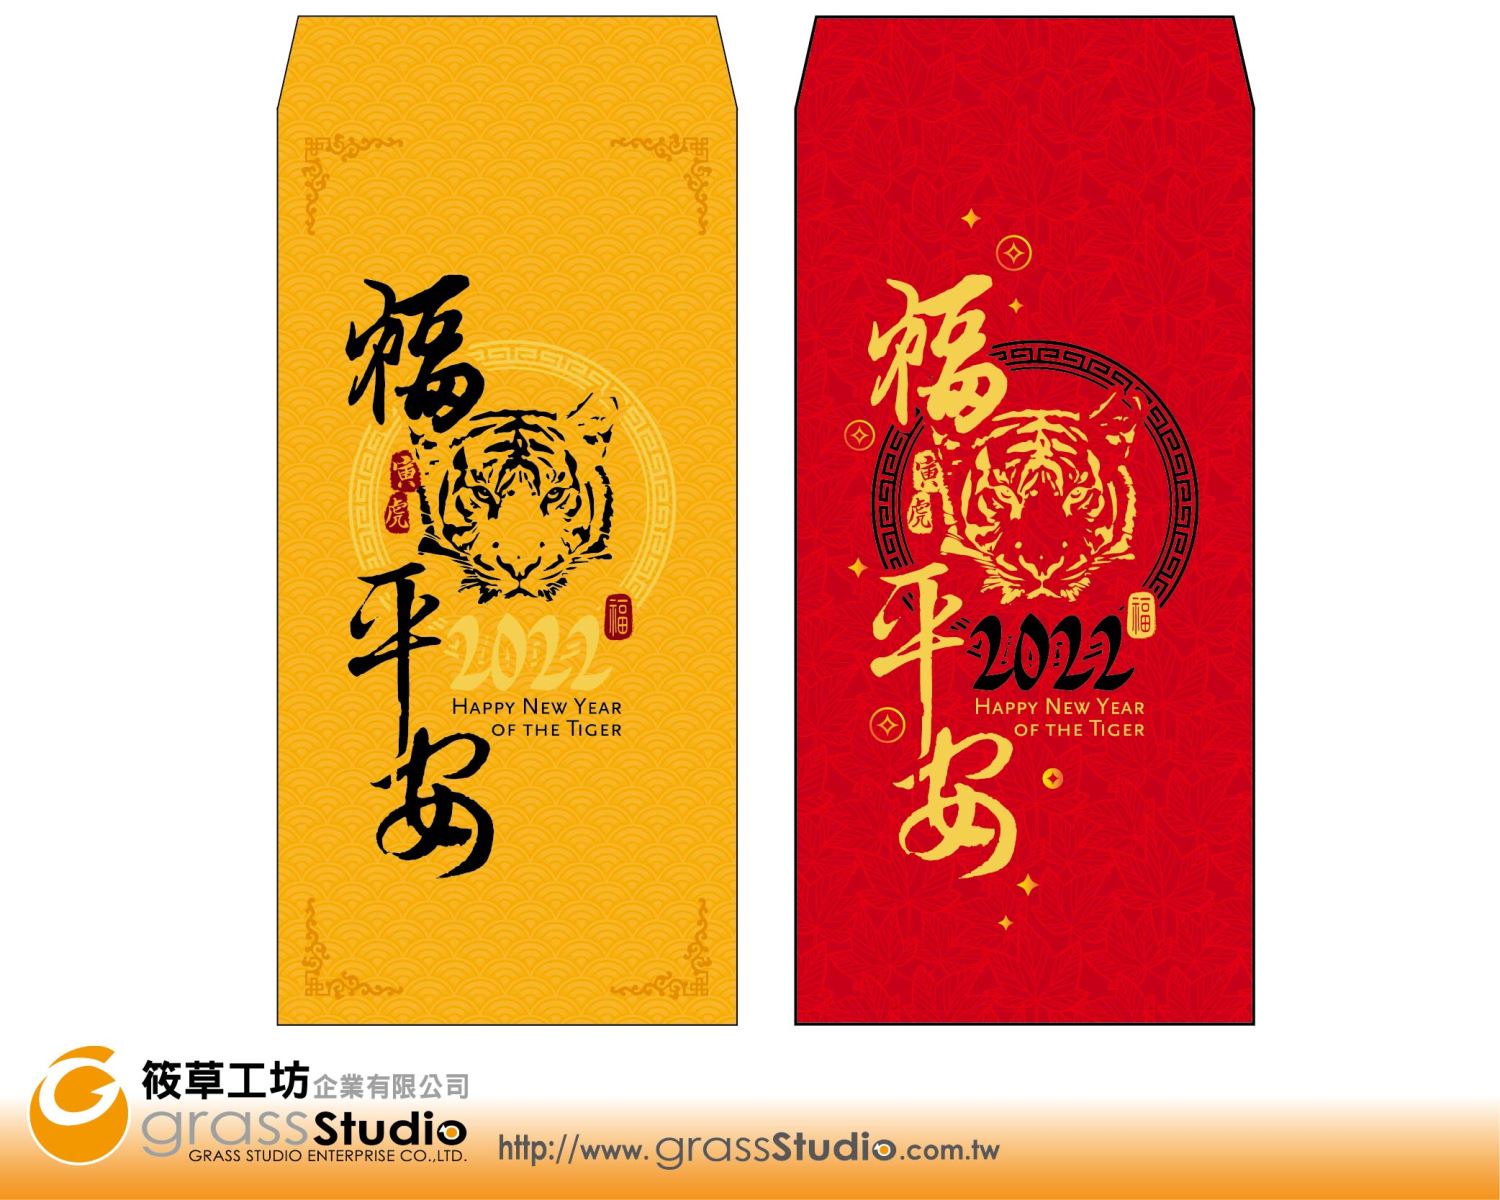 虎年-現成中式紅包袋-燙金+彩印版